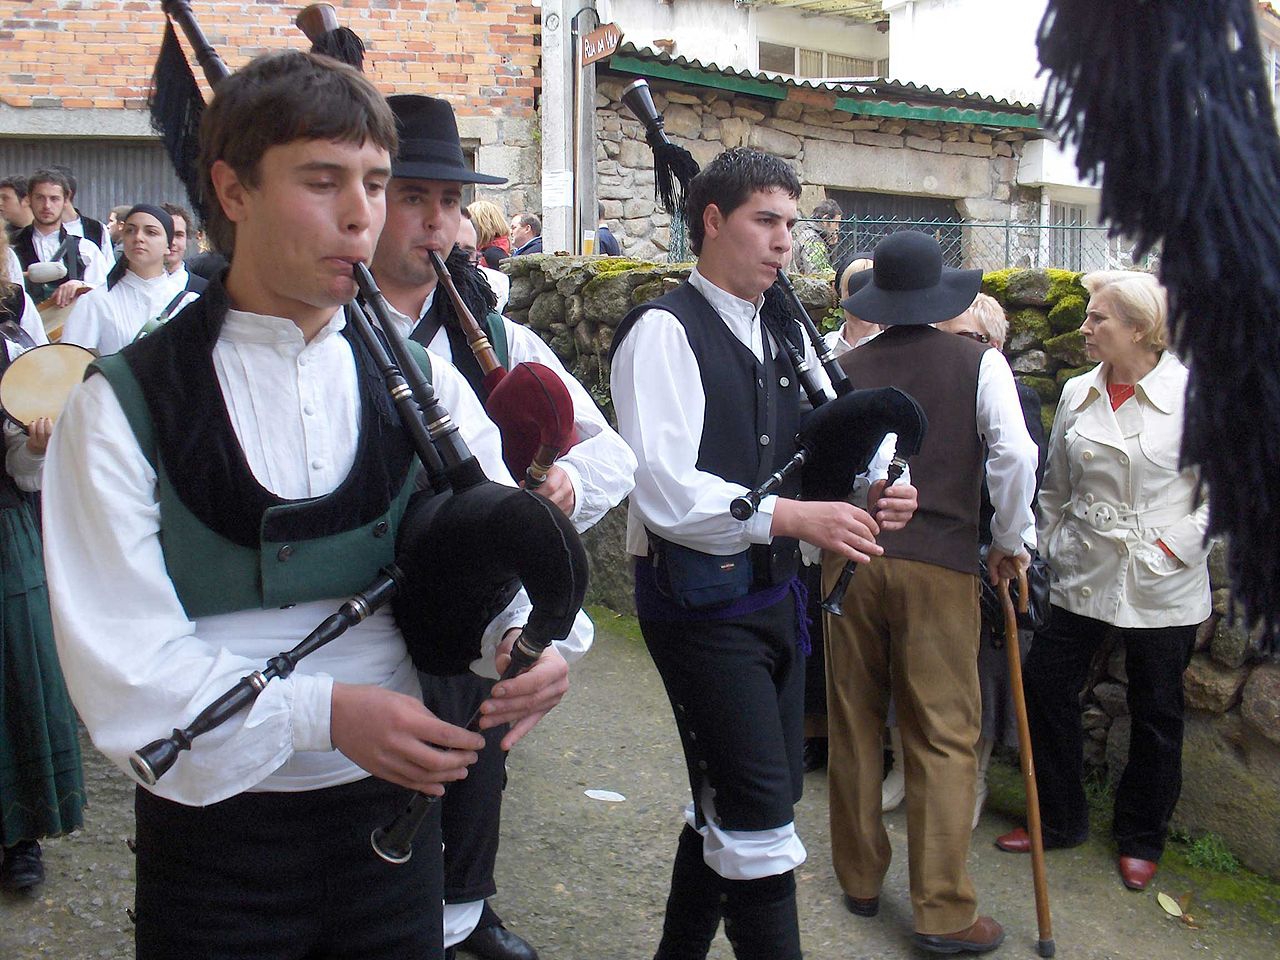 Galician gaiteiros (bagpipers)